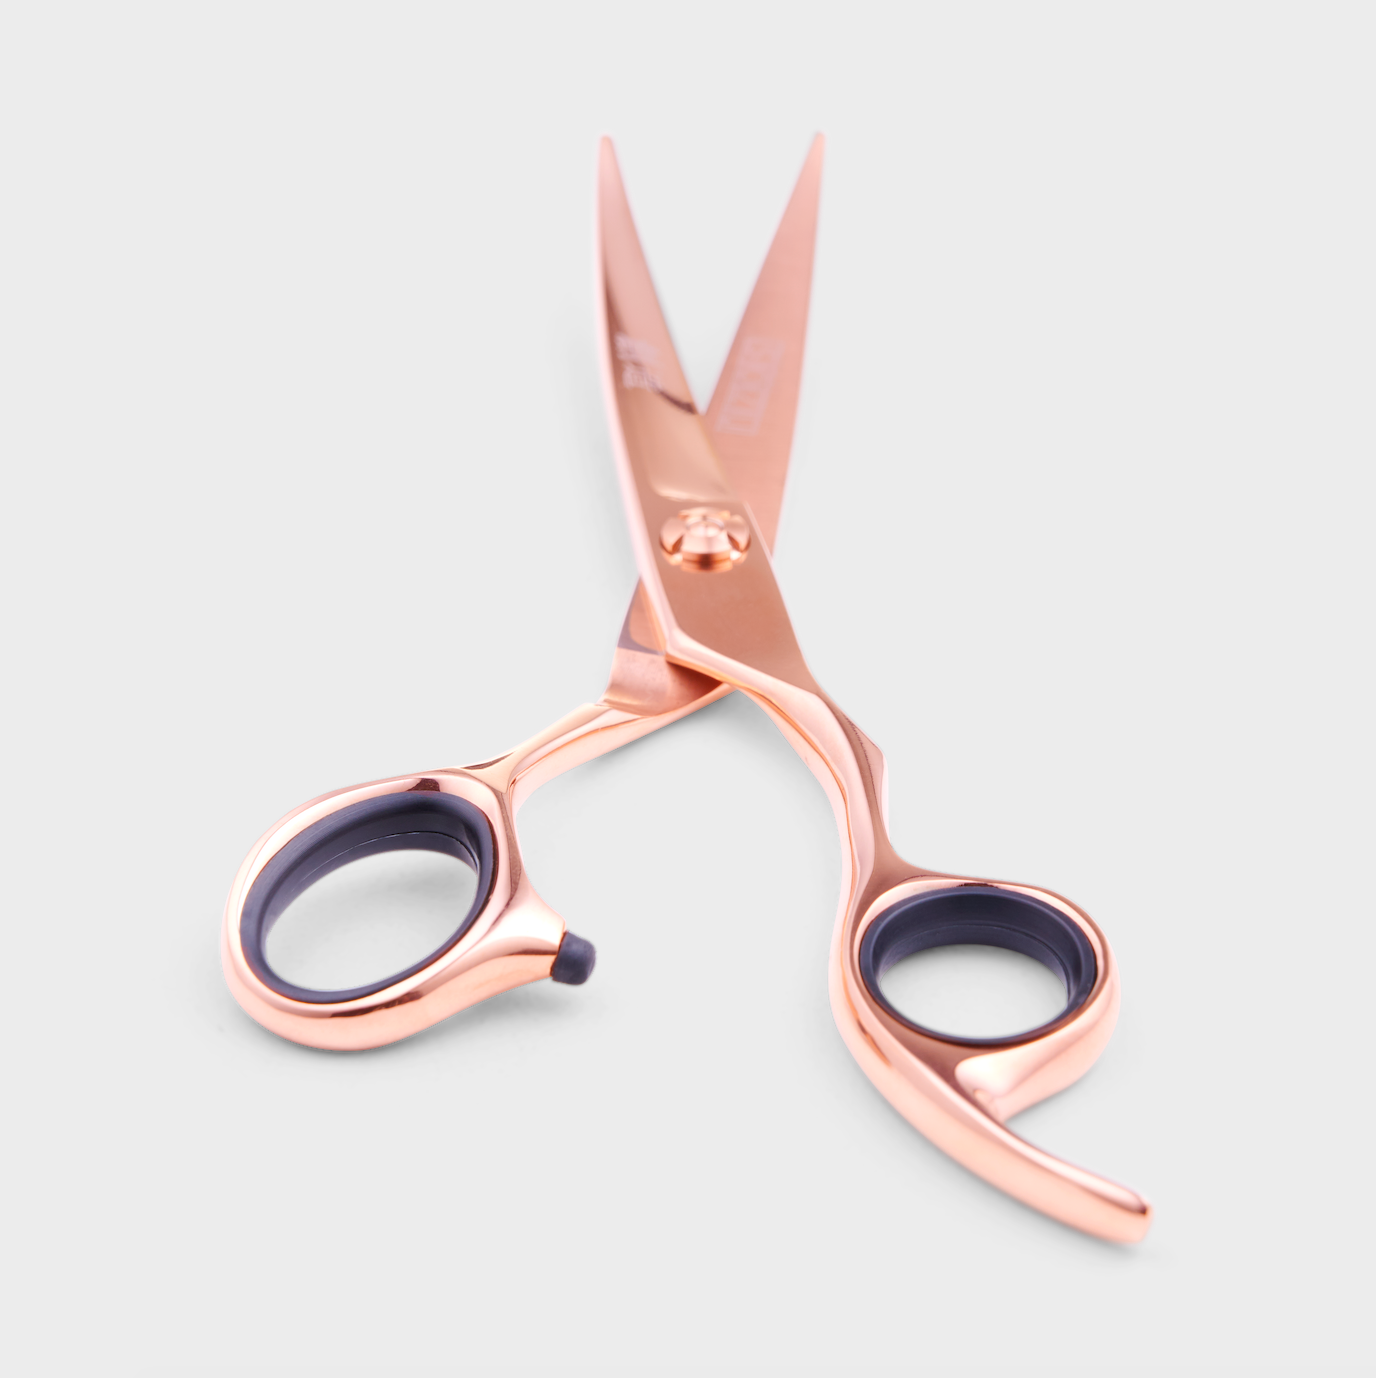 2019 Matsui Matte Rose Gold Ball Tip Cutting Scissor - Grooming